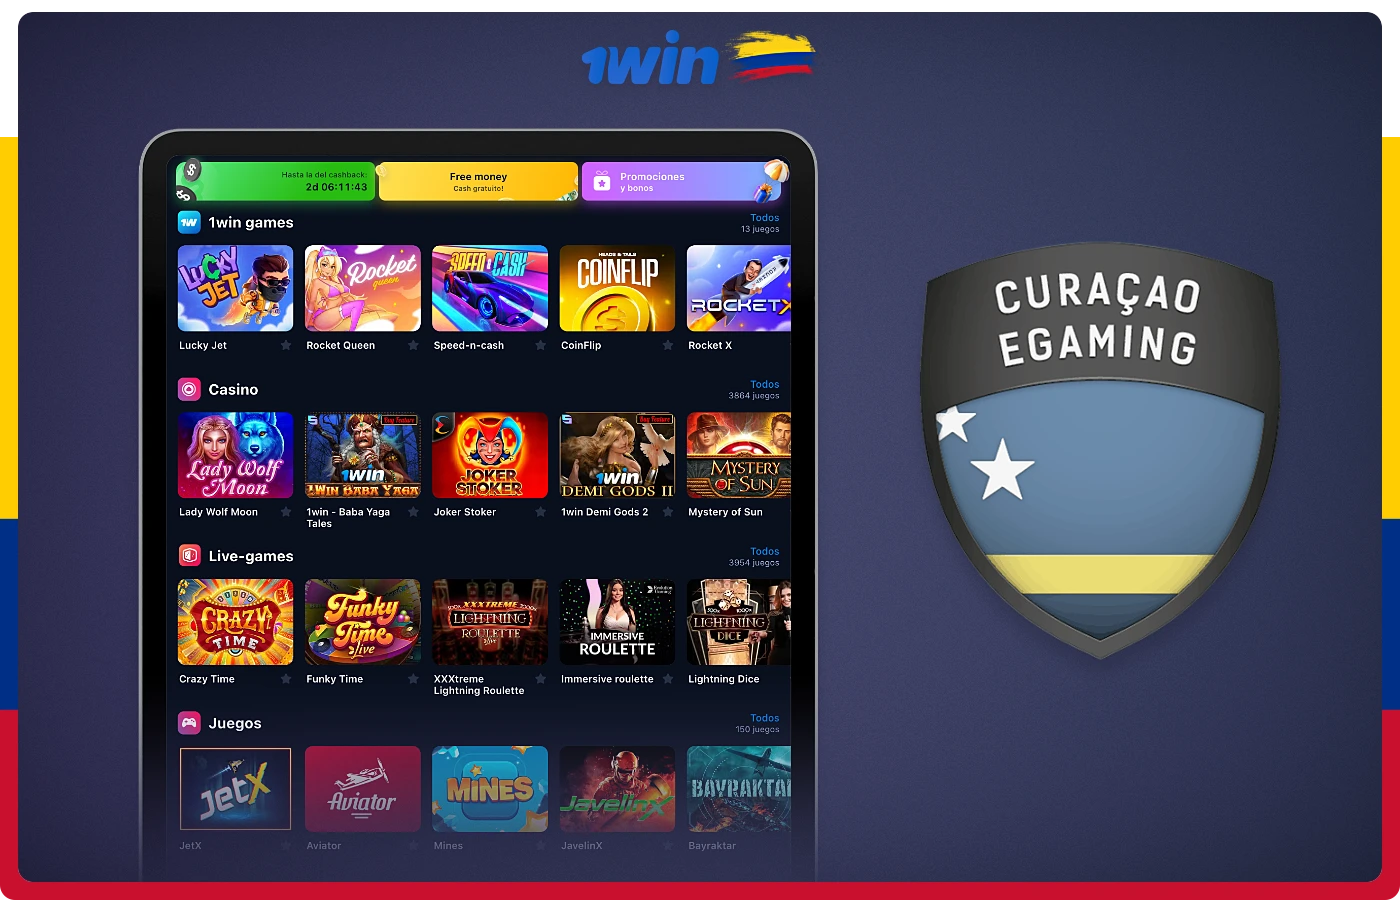 1win Colombia tiene una licencia especial